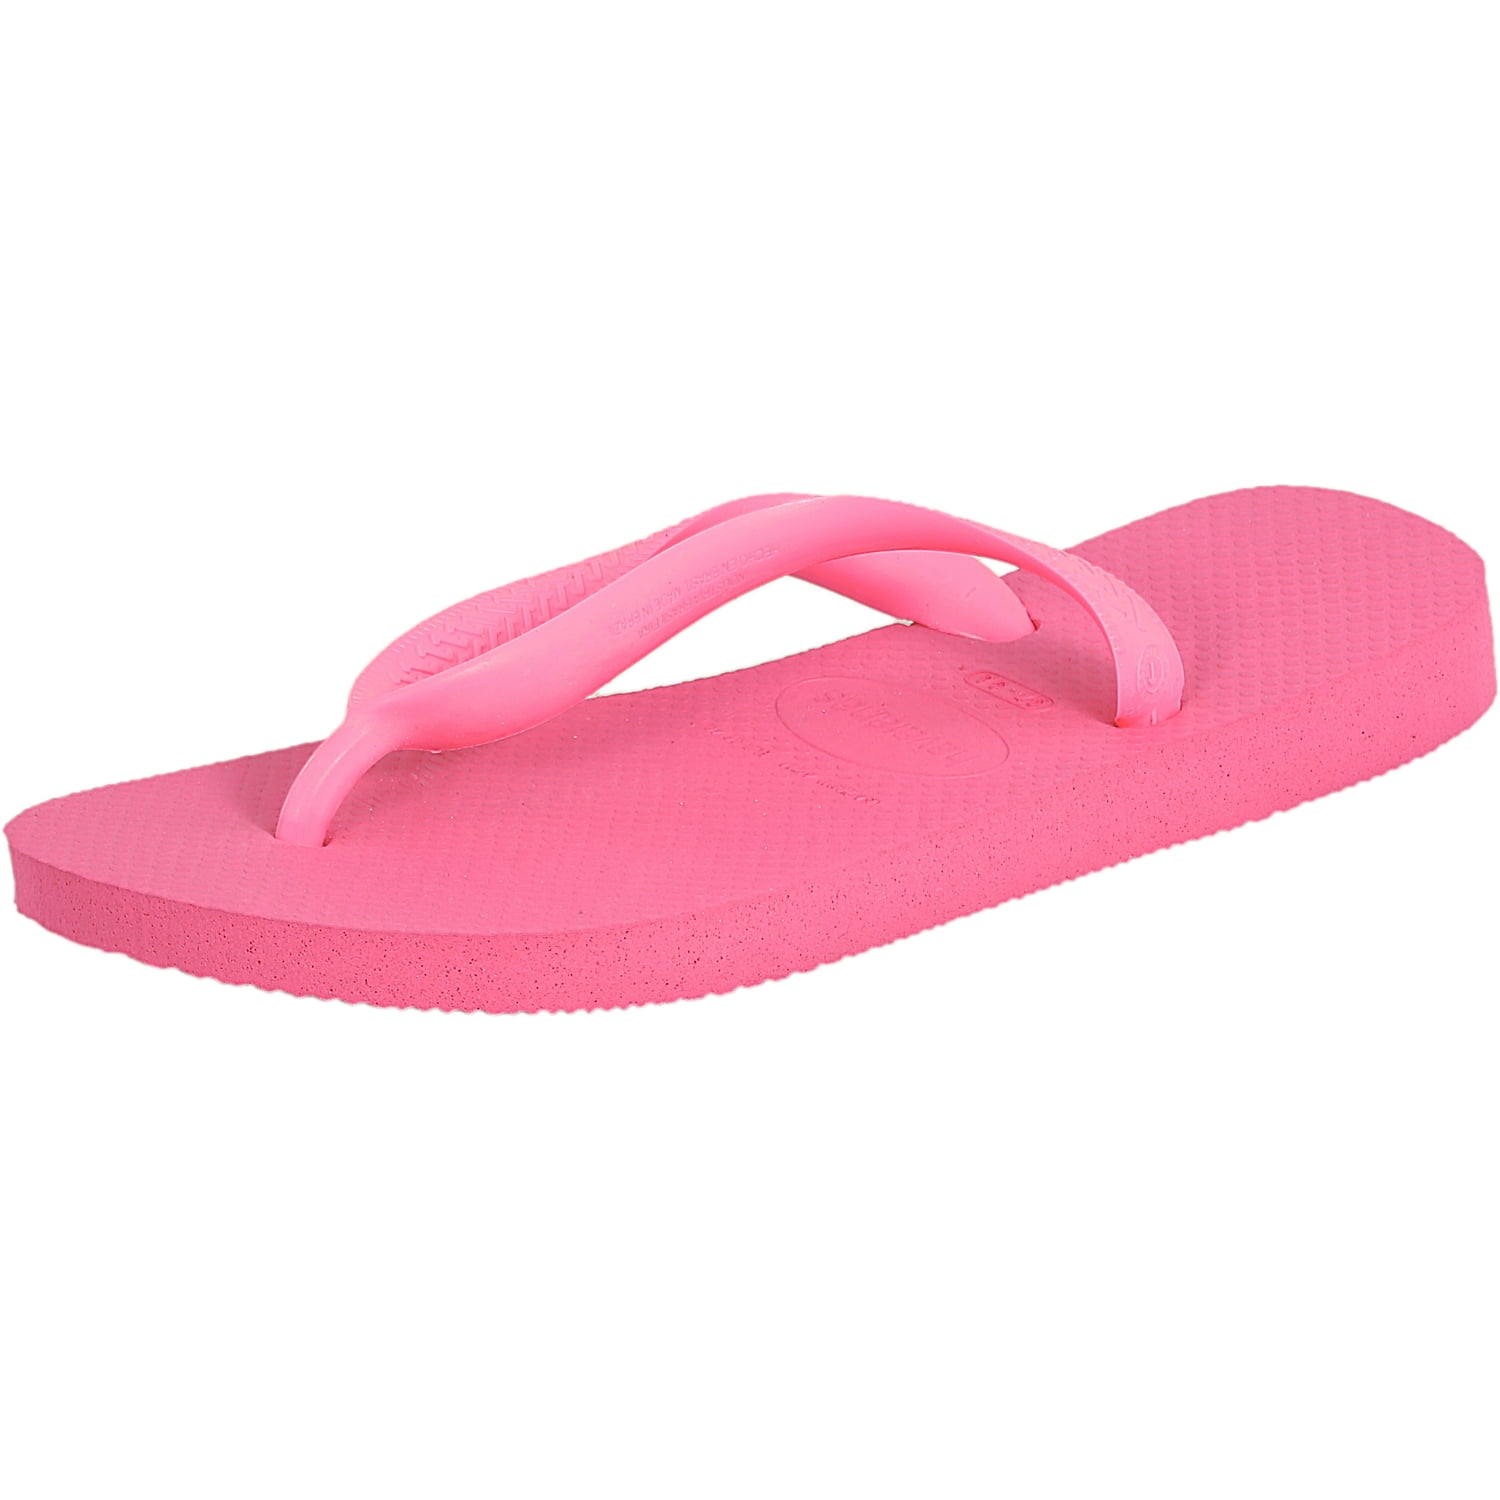 walmart pink sandals